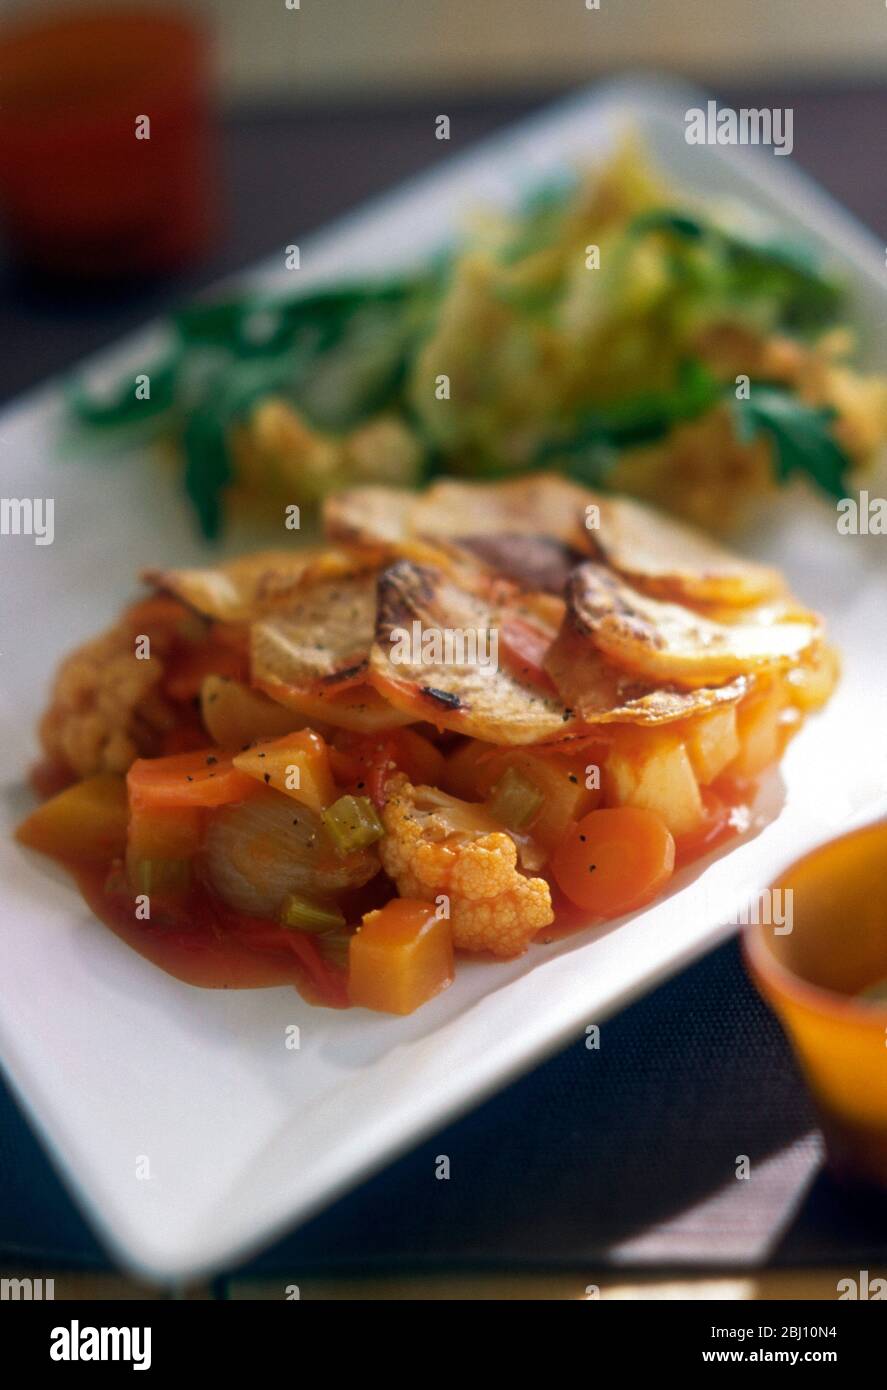 Plat végétarien chaud composé de légumes mélangés avec garniture de pommes de terre en tranches, servi avec salade de roquette sur une plaque blanche carrée moderne. - Banque D'Images